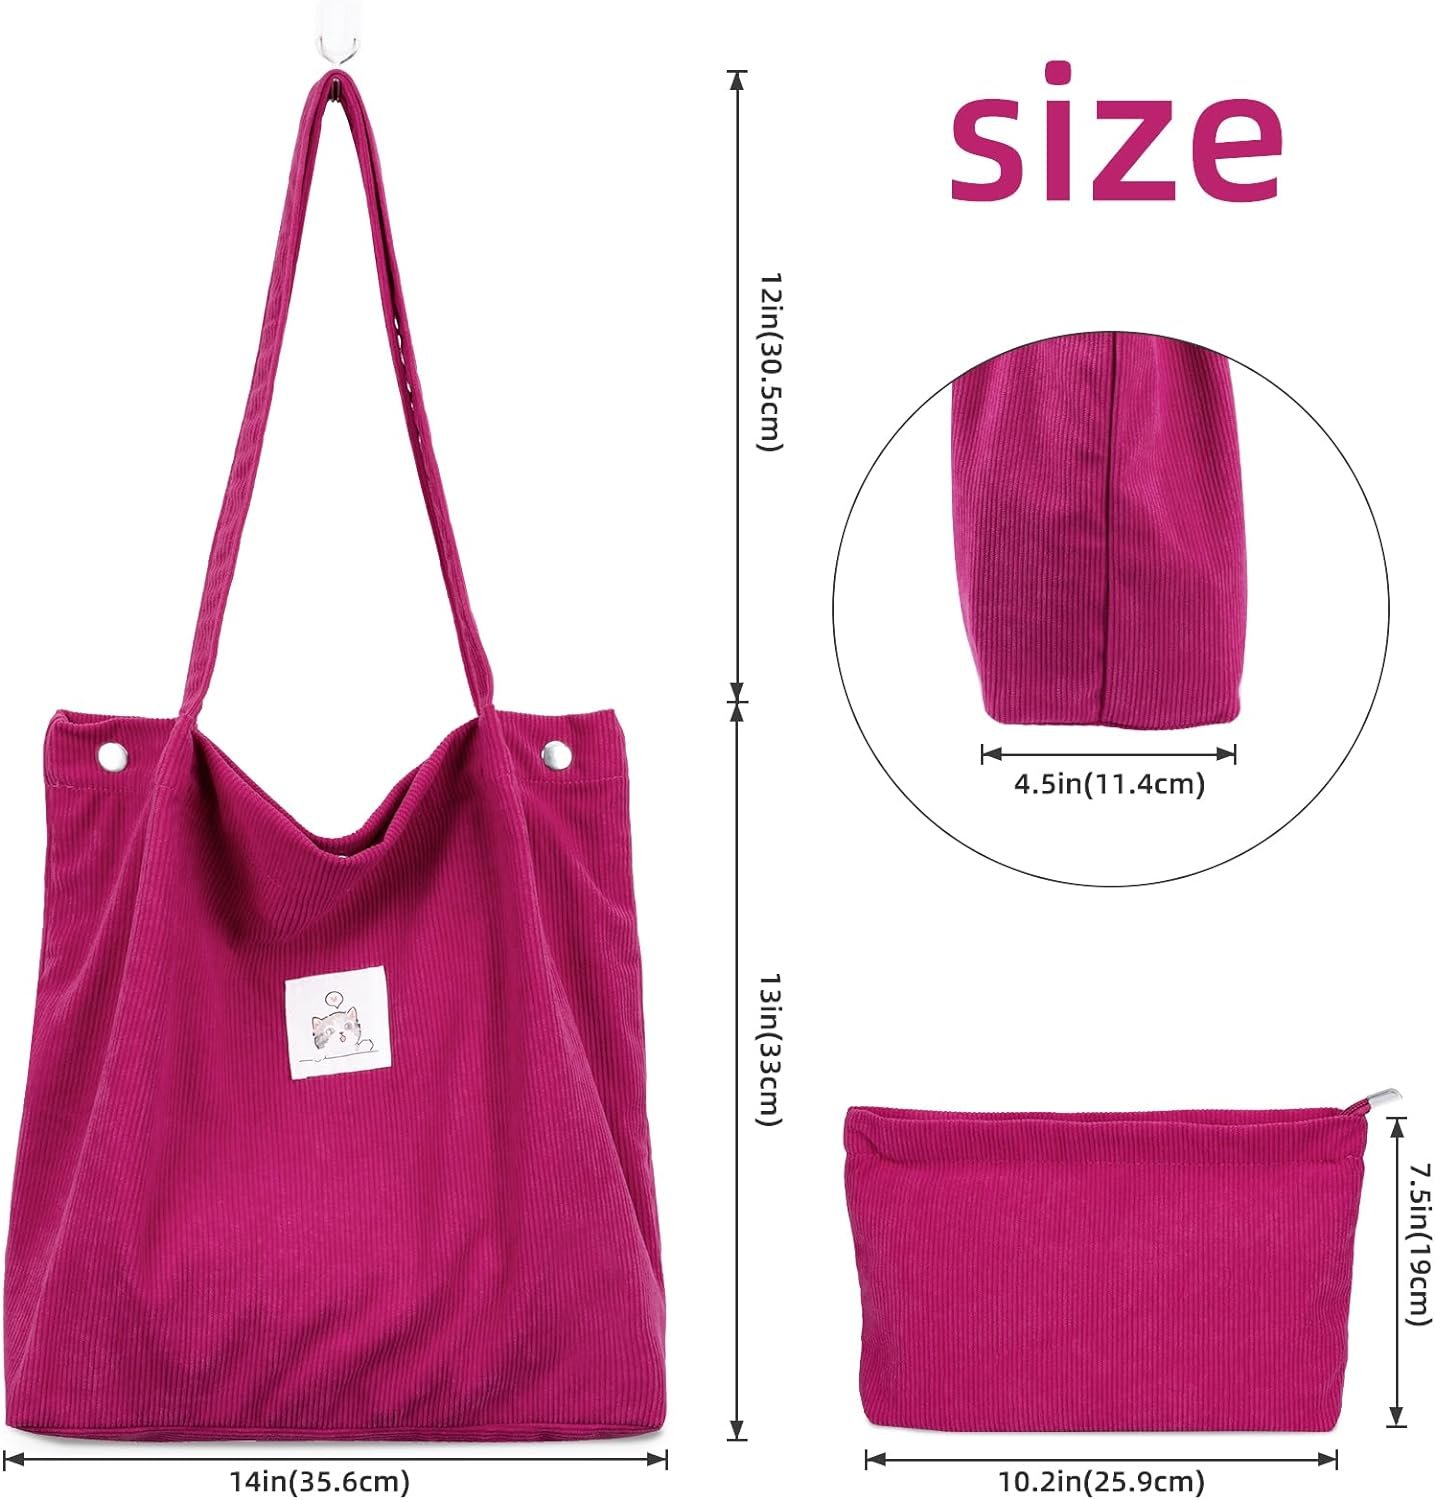 Iioscre Corduroy Tote Bag for Women,Large Capacity Casual Shoulder Handbags,Mini Multi purpose Handbag 